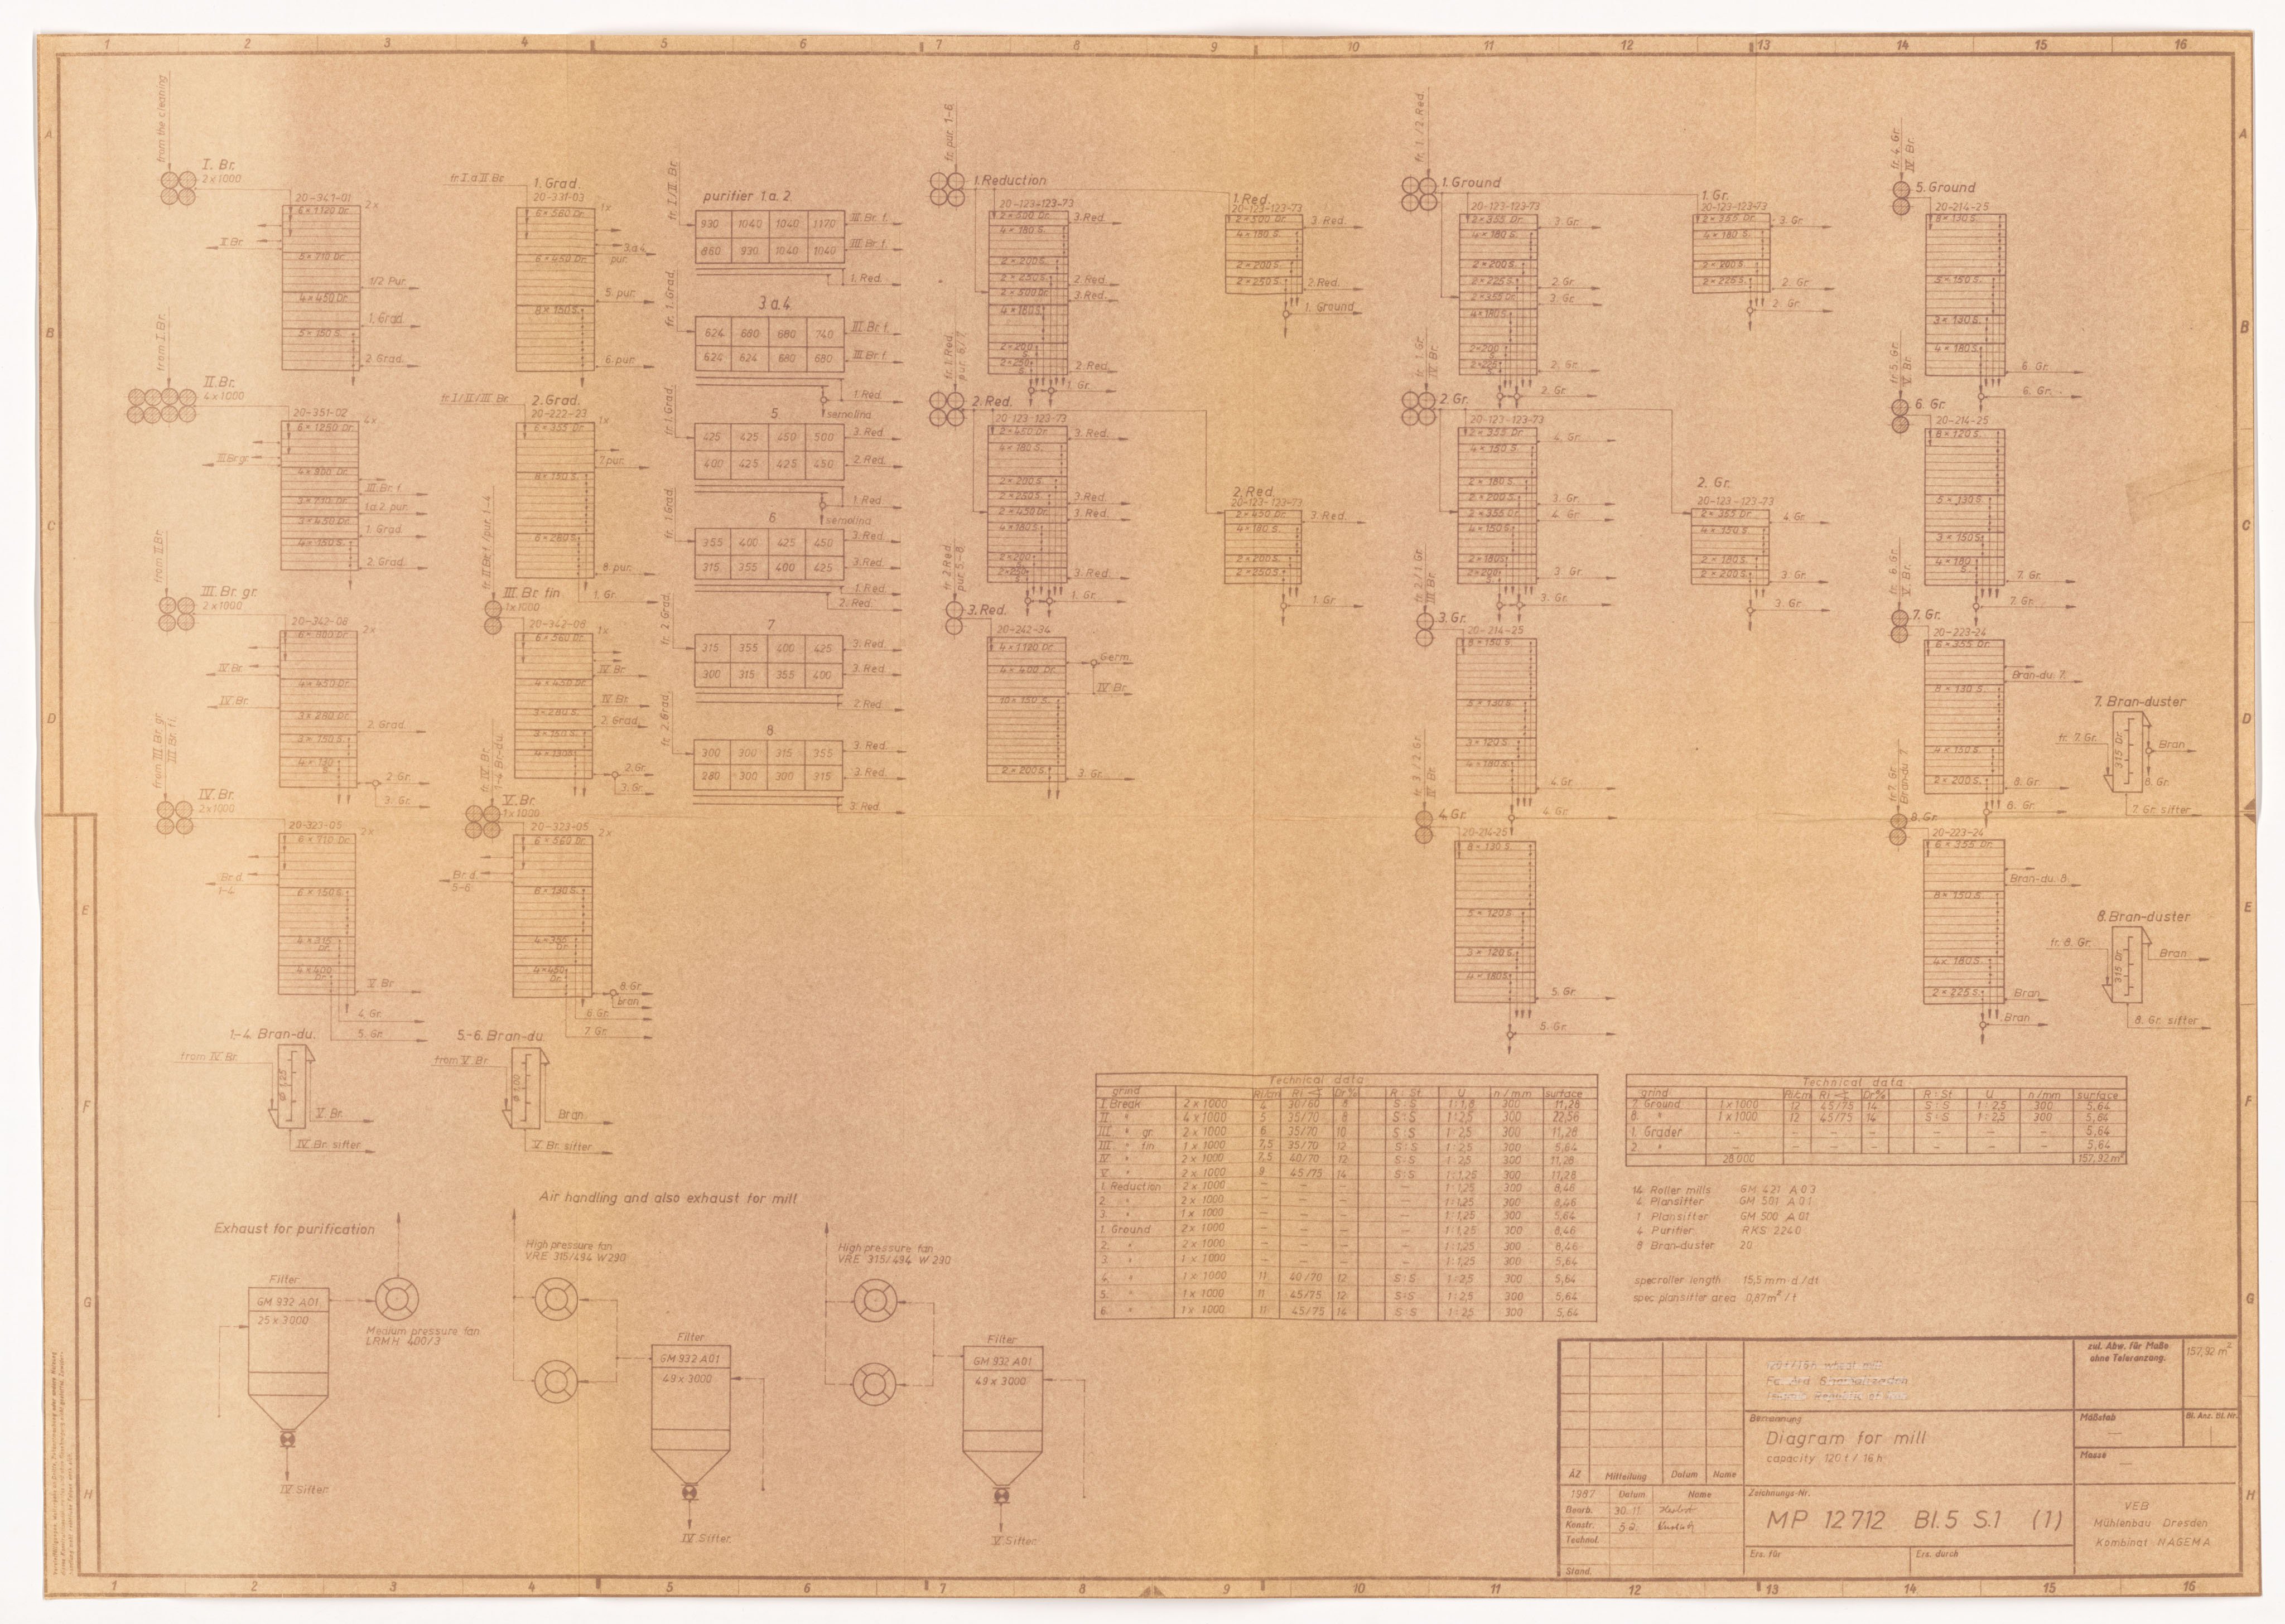 Diagram for mill capacity 120t/16h (Historische Mühle von Sanssouci CC BY-NC-SA)